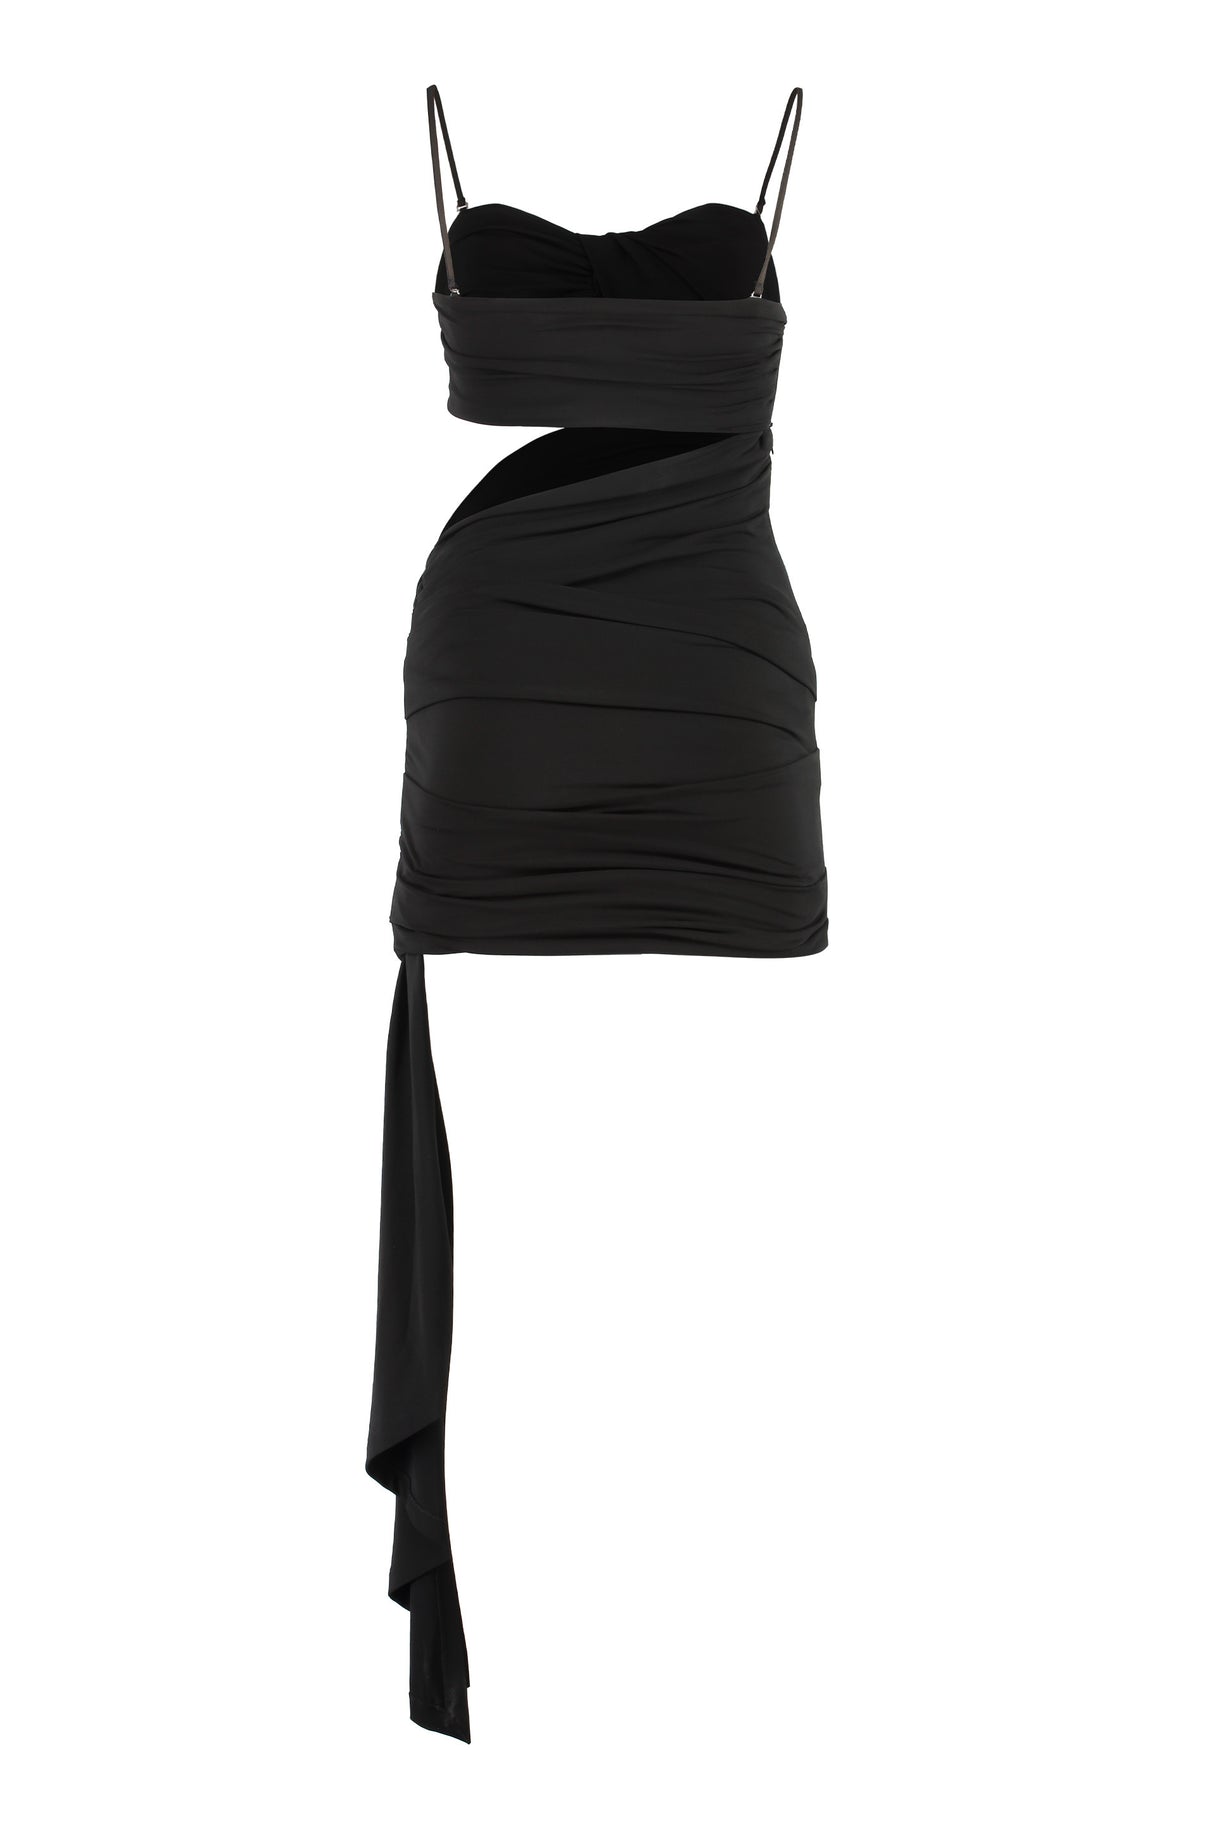 فستان قصير أسود مصمم بتفاصيل فريدة للنساء